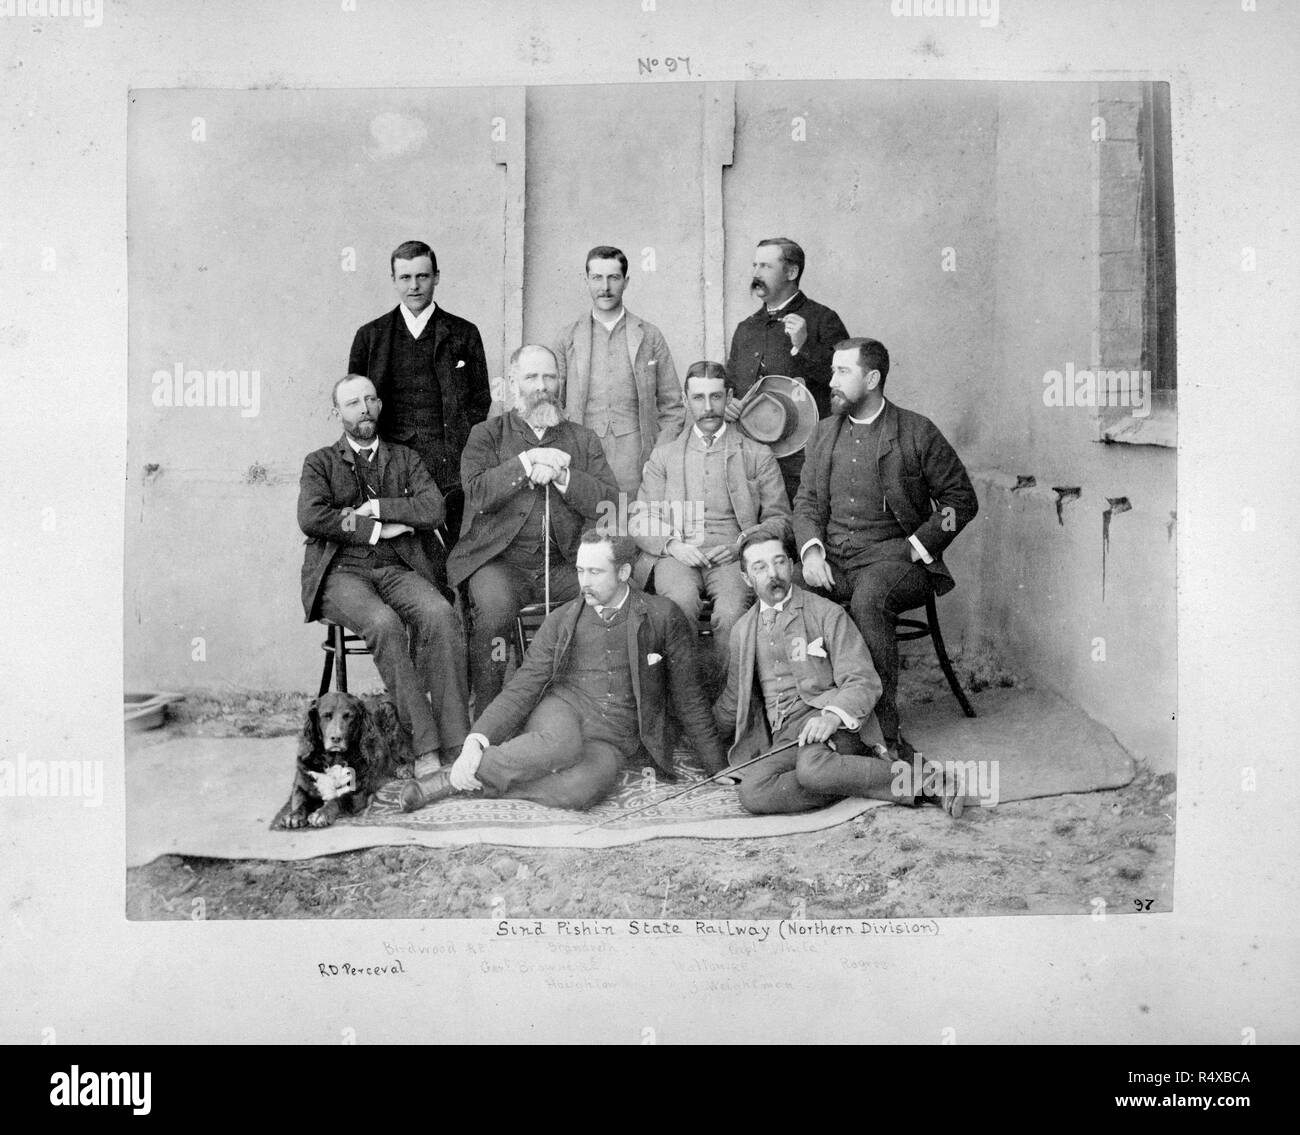 Portrait photographique d'un groupe d'ingénieurs. Le nord de l'État le Pishin Scind Railway. 19e siècle du Baloutchistan. Tous les nommés : "Birdwood, RE ; Brandreth ; Le Capt White, RE ; R.D. Perceval ; [Général] James Browne, RE ; Walton, RE ; Rogers ; Houghton ; W.J. Weightman'. [Groupe d'ingénieurs]. Le nord de l'État le Pishin Scind Rly. Le Balouchistan, Pakistan, Quetta ; 1887. Portraits : Birdwood, Herbert Christopher Impey. Le capitaine Brandreth. Browne, James. Général Houghton. Perceval, Richard Douglas. Rogers. Walton, William Ellys. Le capitaine Weightman, Walter James. Charles White, Fitzwilliam. Source : Photo 481/1/.(9). Auteur : ANON. Banque D'Images